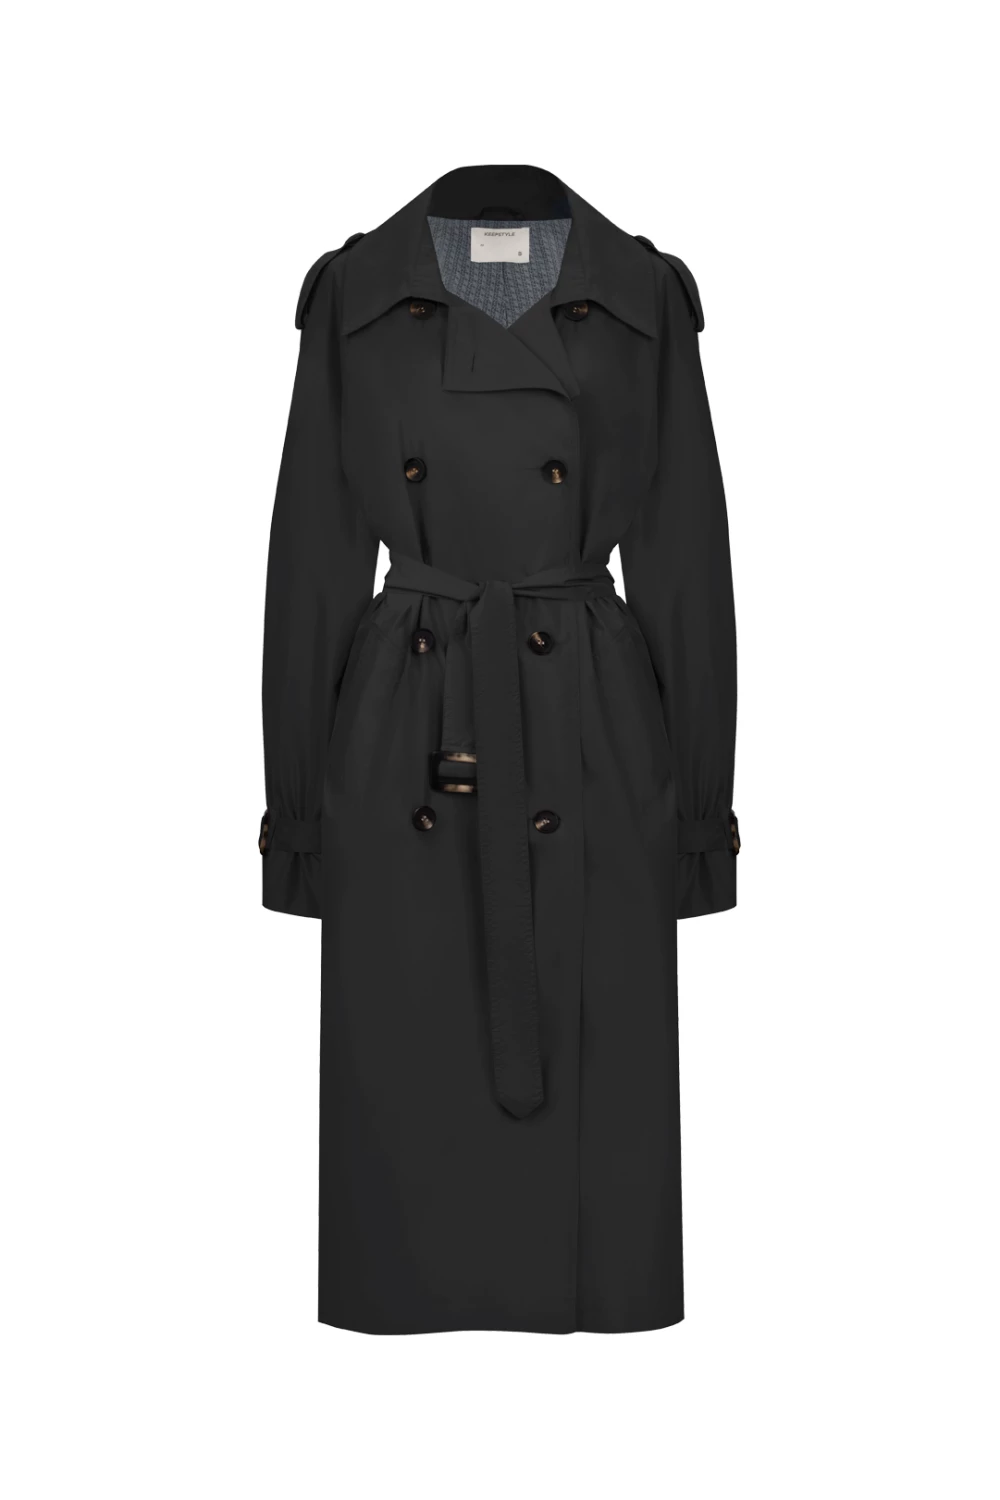 80s trench coat in dark gray color